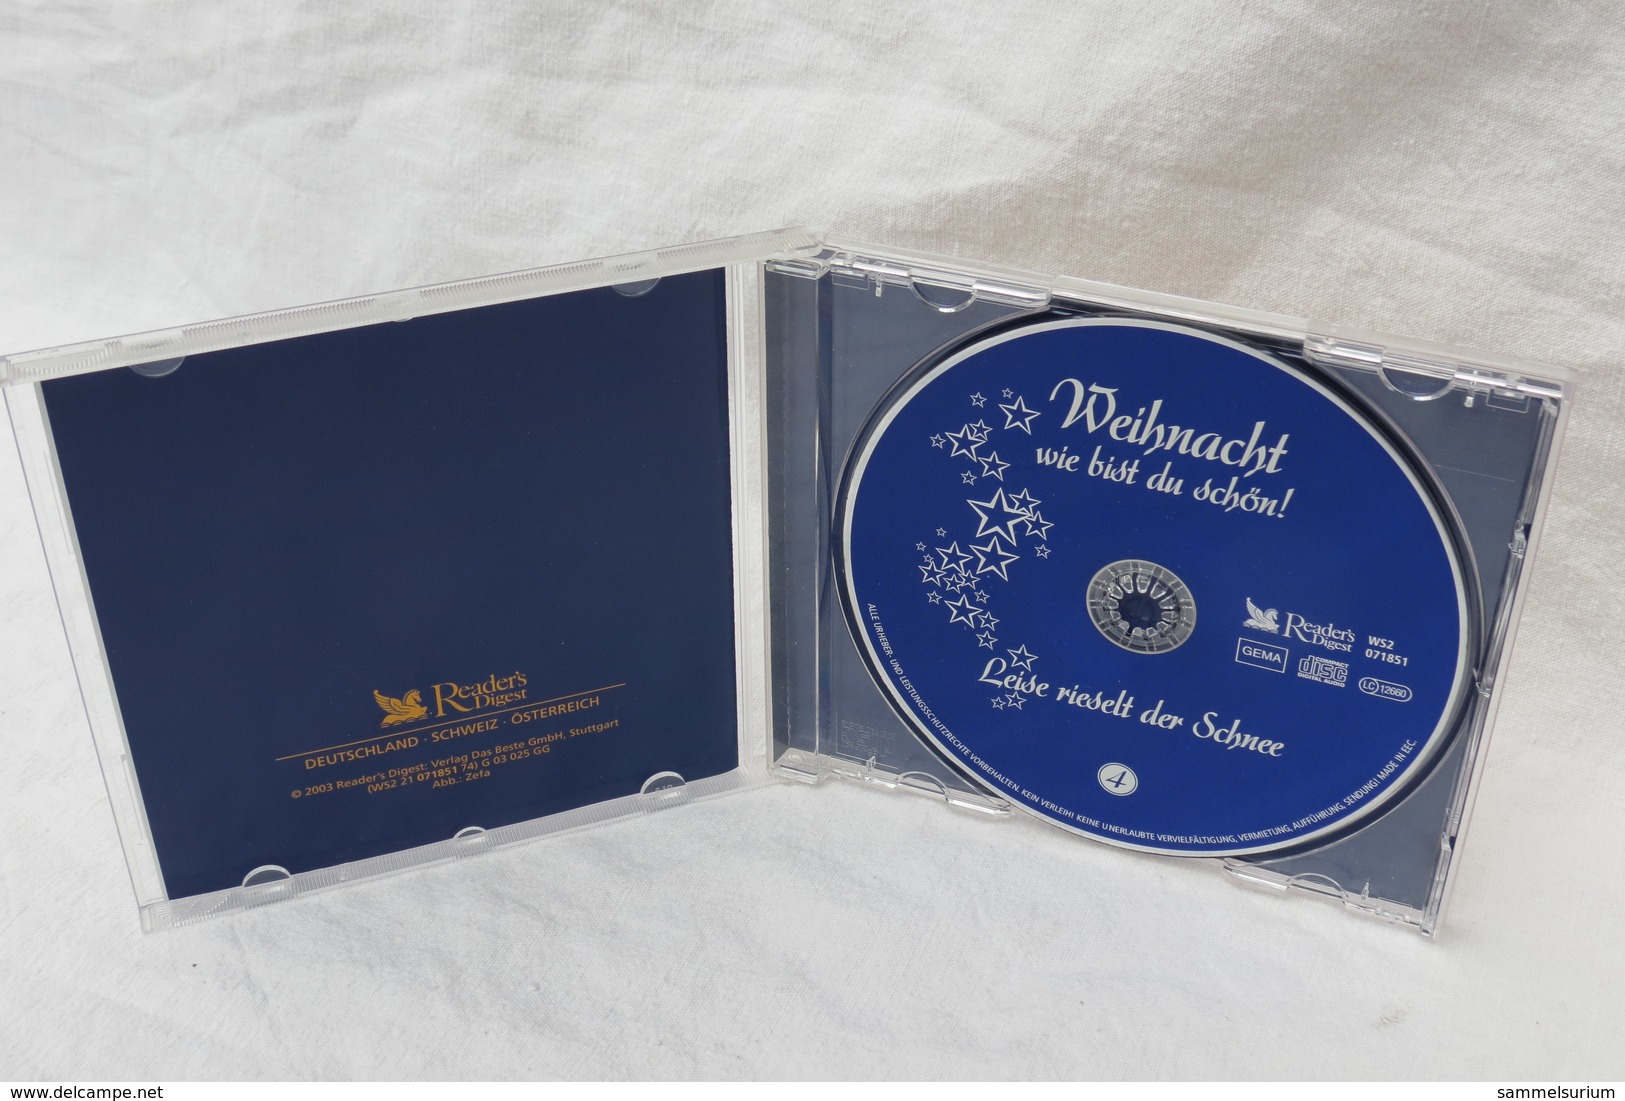 CD "Weihnacht, Wie Bist Du Schön!" Beliebte Stars Feiern Die Heilige Nacht, CD 4 - Weihnachtslieder